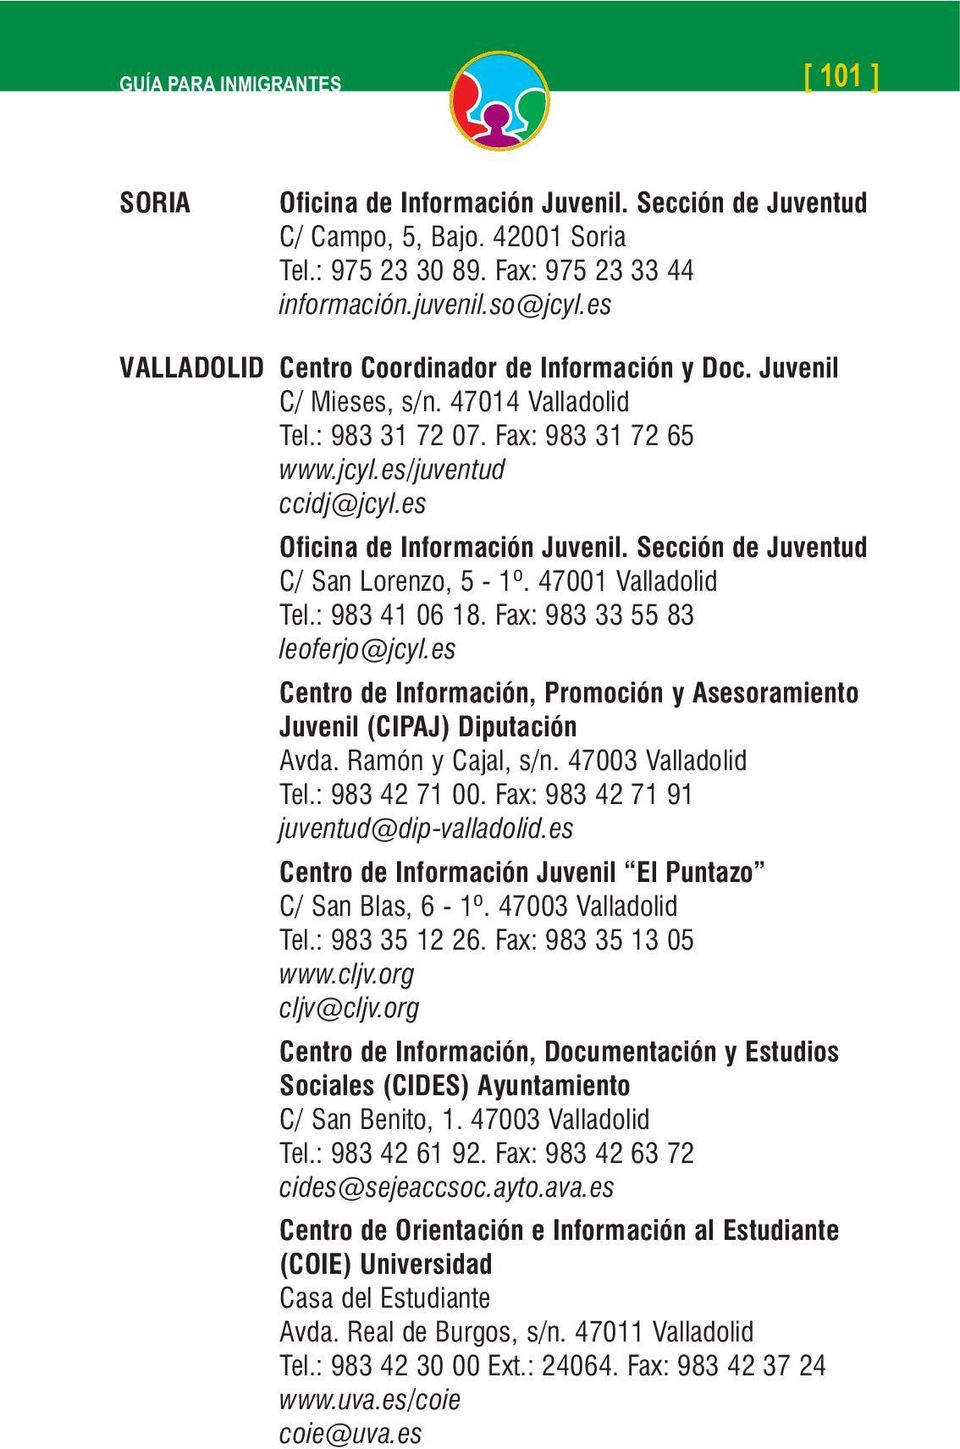 Fax: 983 33 55 83 leoferjo@jcyl.es Centro de Información, Promoción y Asesoramiento Juvenil (CIPAJ) Diputación Avda. Ramón y Cajal, s/n. 47003 Valladolid Tel.: 983 42 71 00.